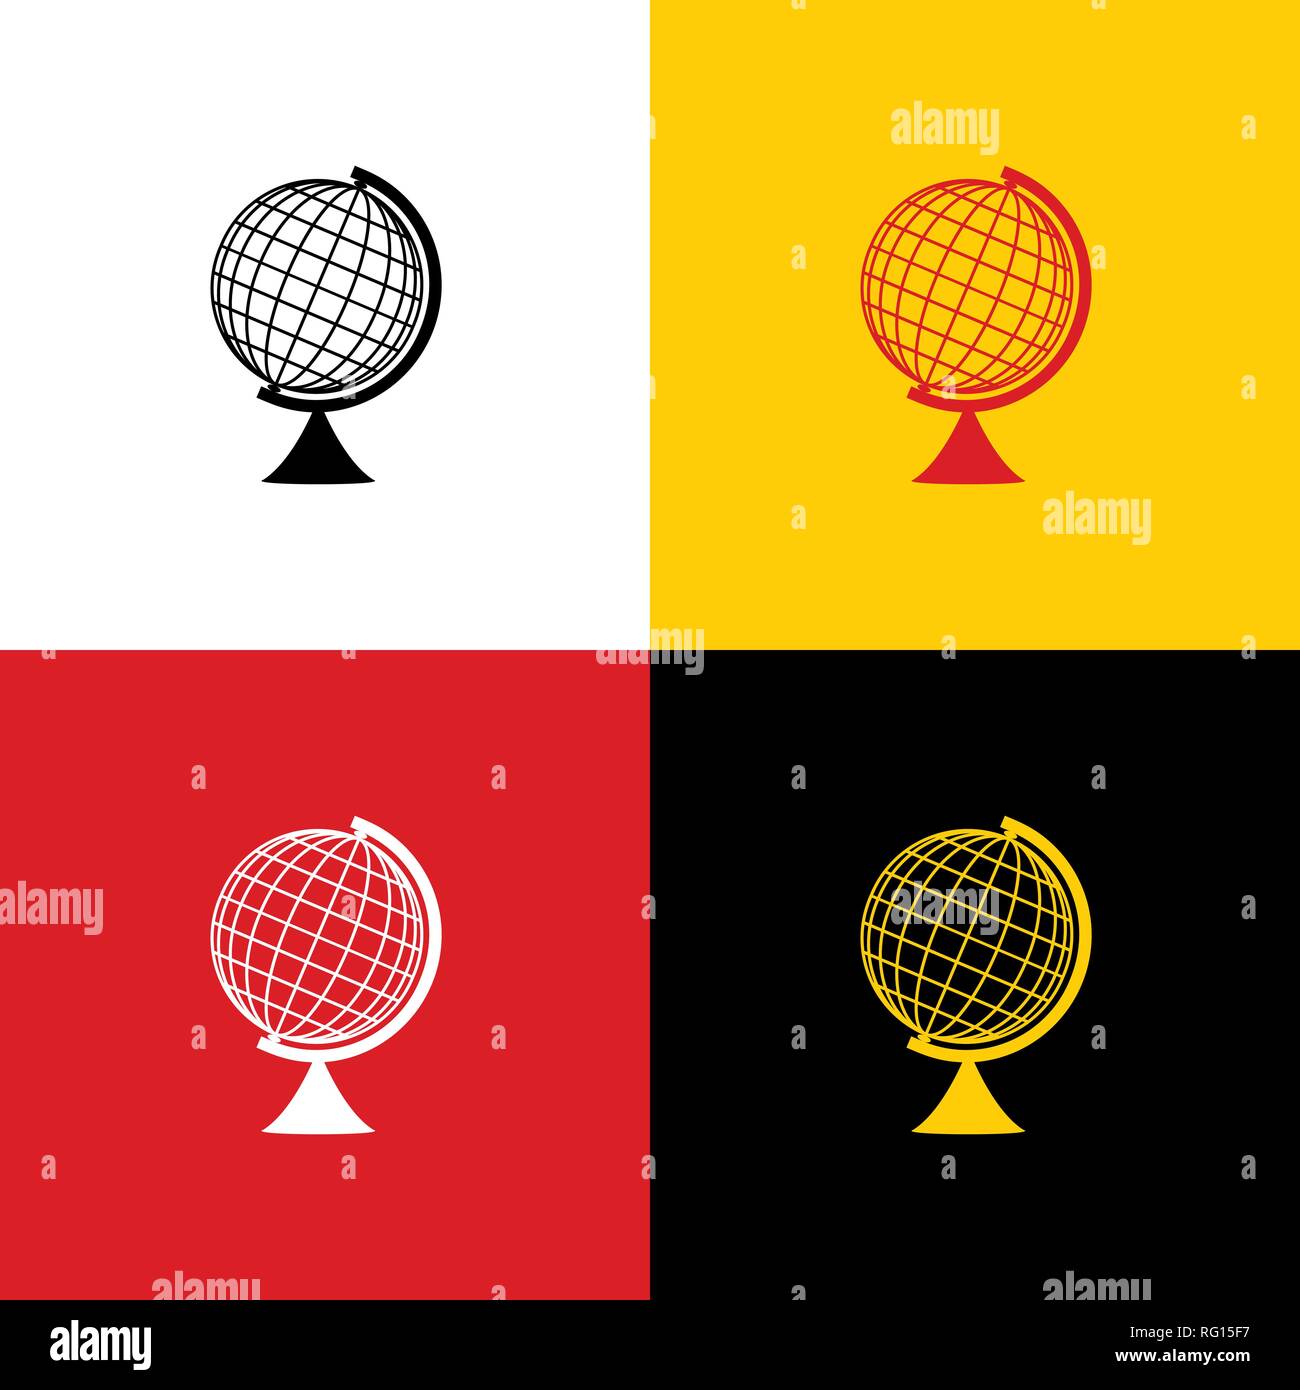 Globo terrestre di segno. Vettore. Icone di bandiera tedesca su corrispondenti ai colori come sfondo. Illustrazione Vettoriale